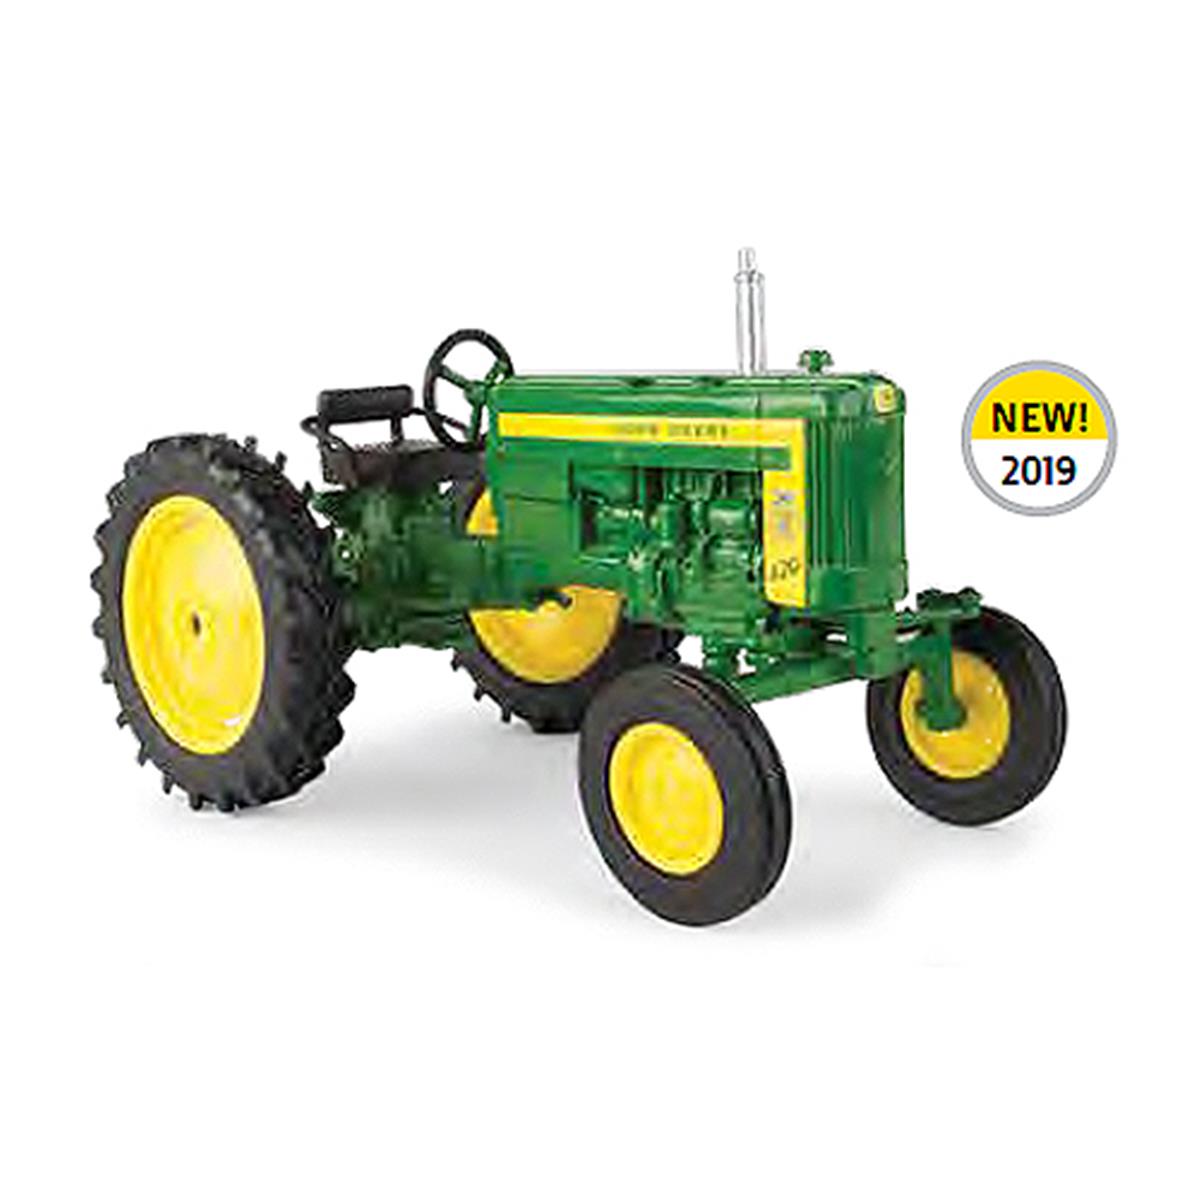 Ert45687 1 By 16 Scale John Deere 420 Tractor